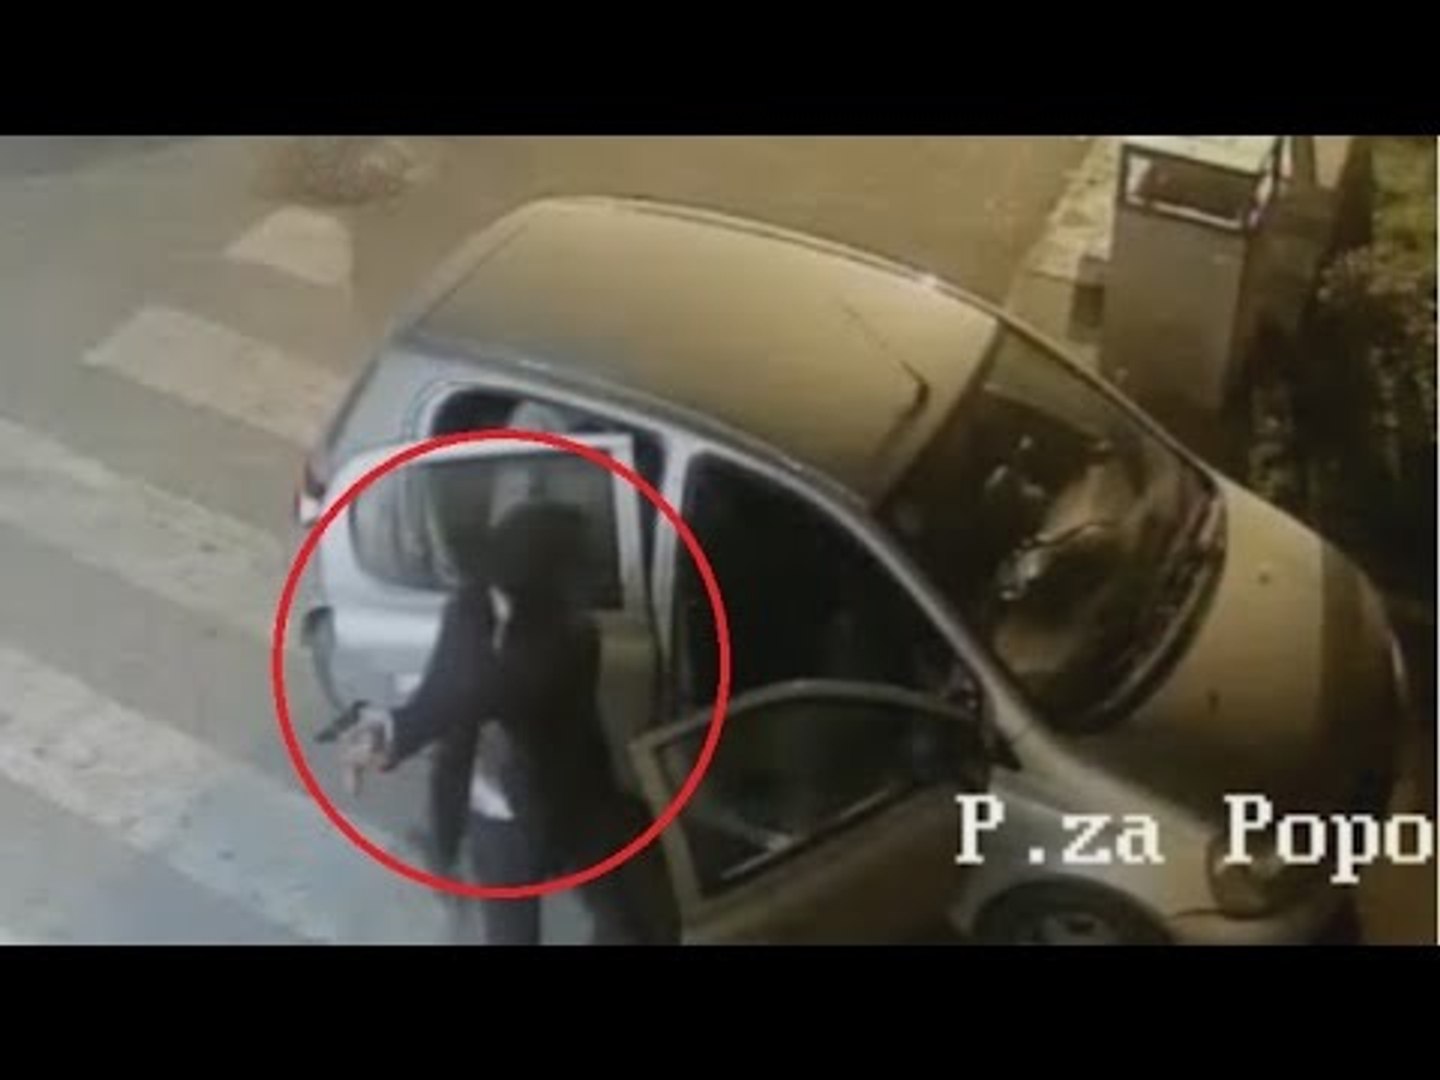 Napoli Nord - Attentati ad Equitalia, Comuni e sede M5S: arrestata banda  eversiva (10.04.17) - Video Dailymotion